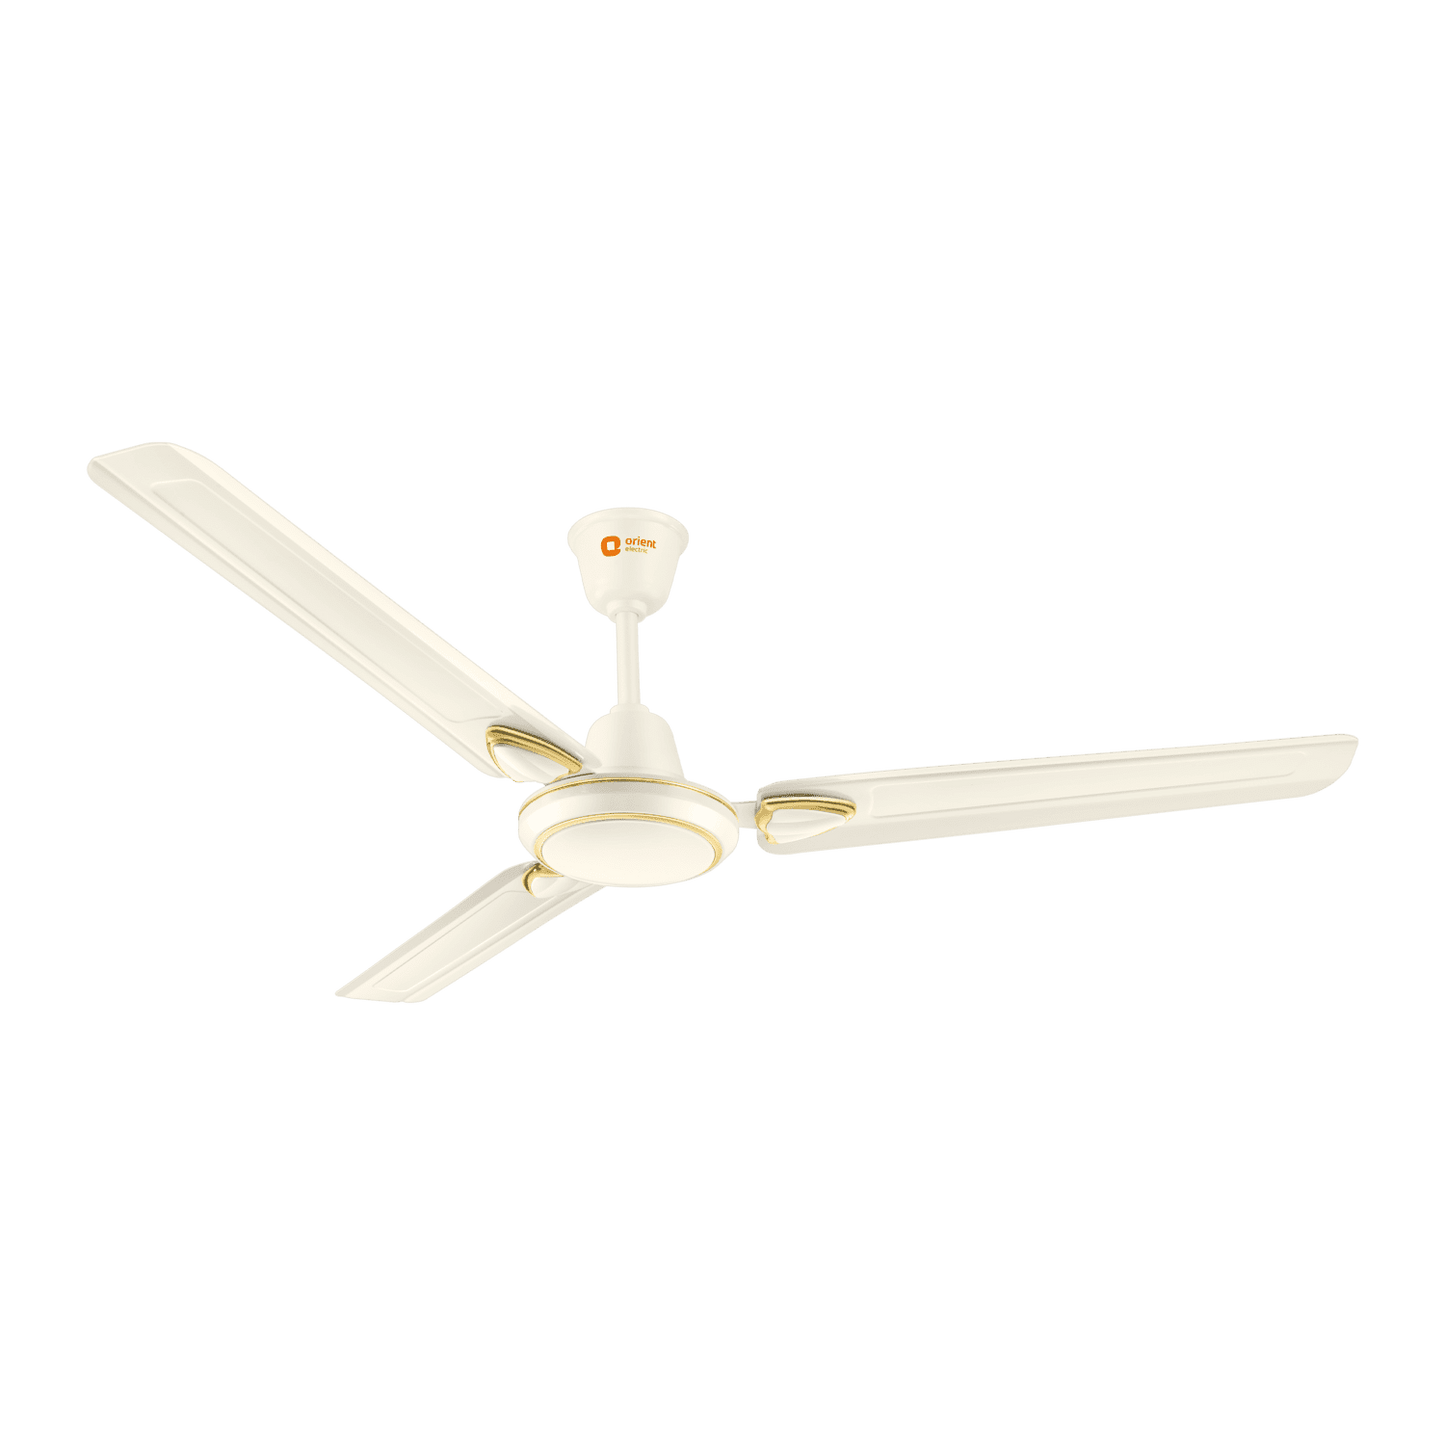 Buy Bajaj Trendy 1200 mm Ceiling fan High speed (Snowy White) at